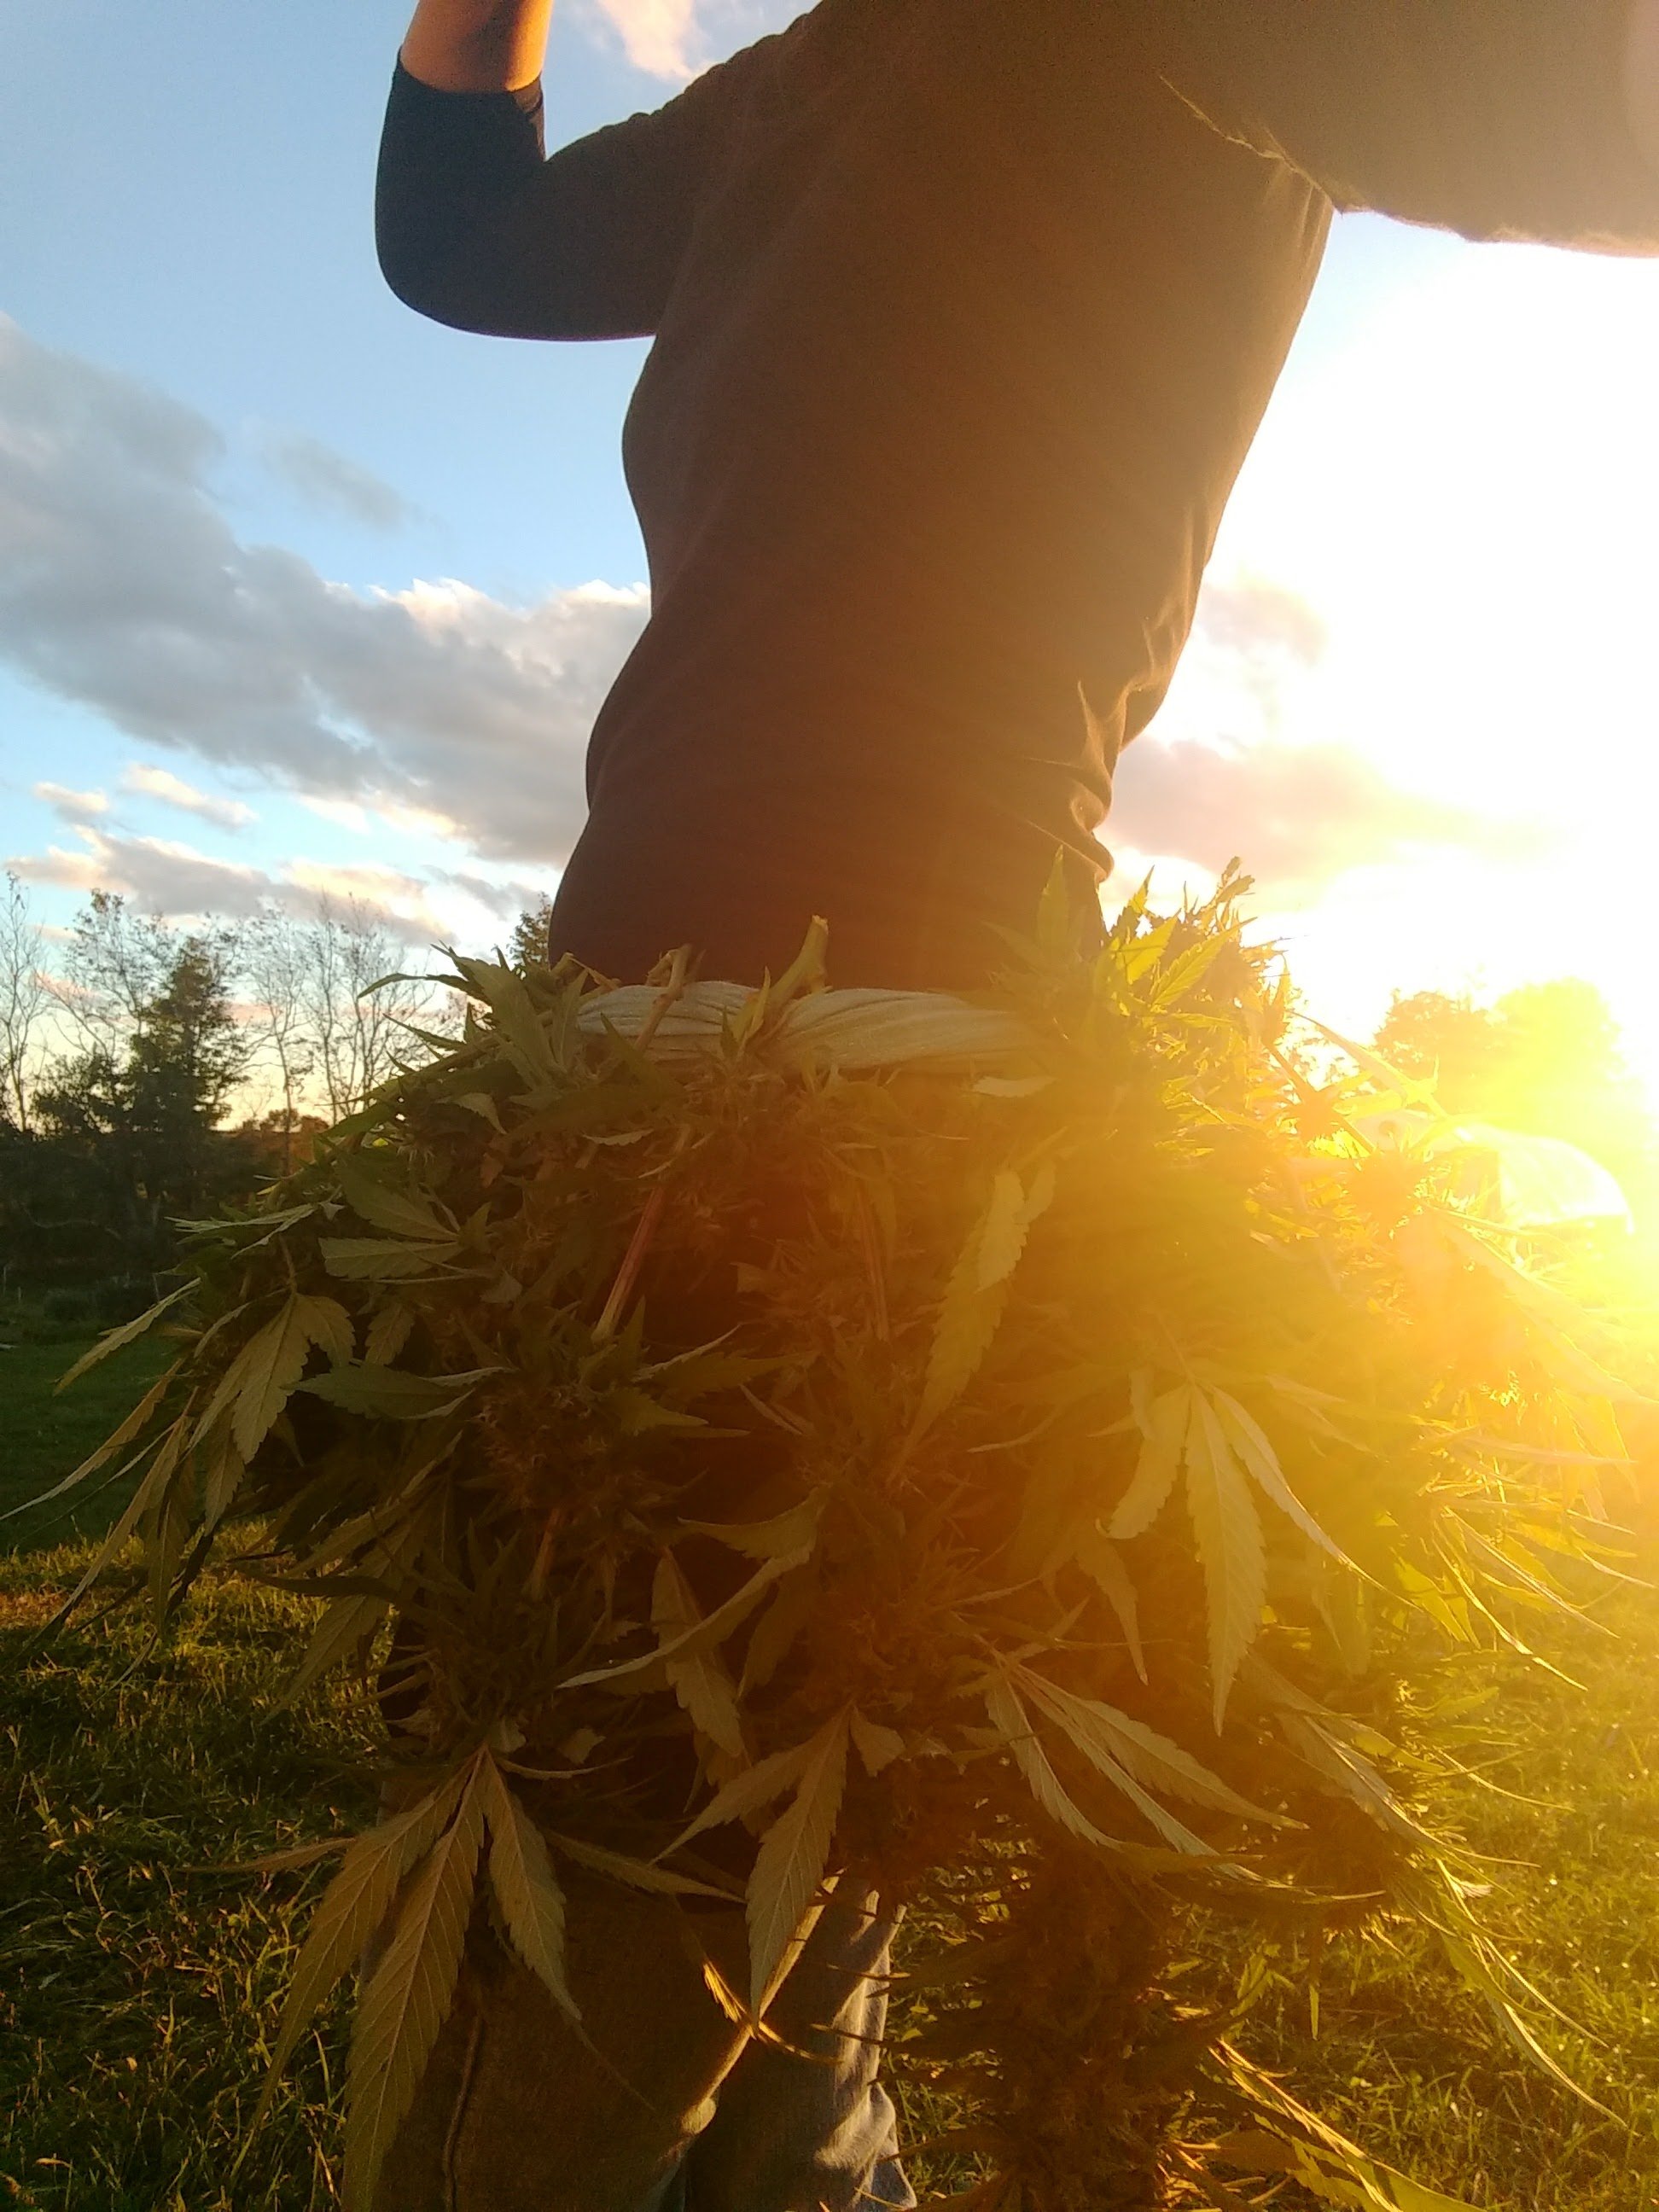 Cannabispflanzen in der Sonne